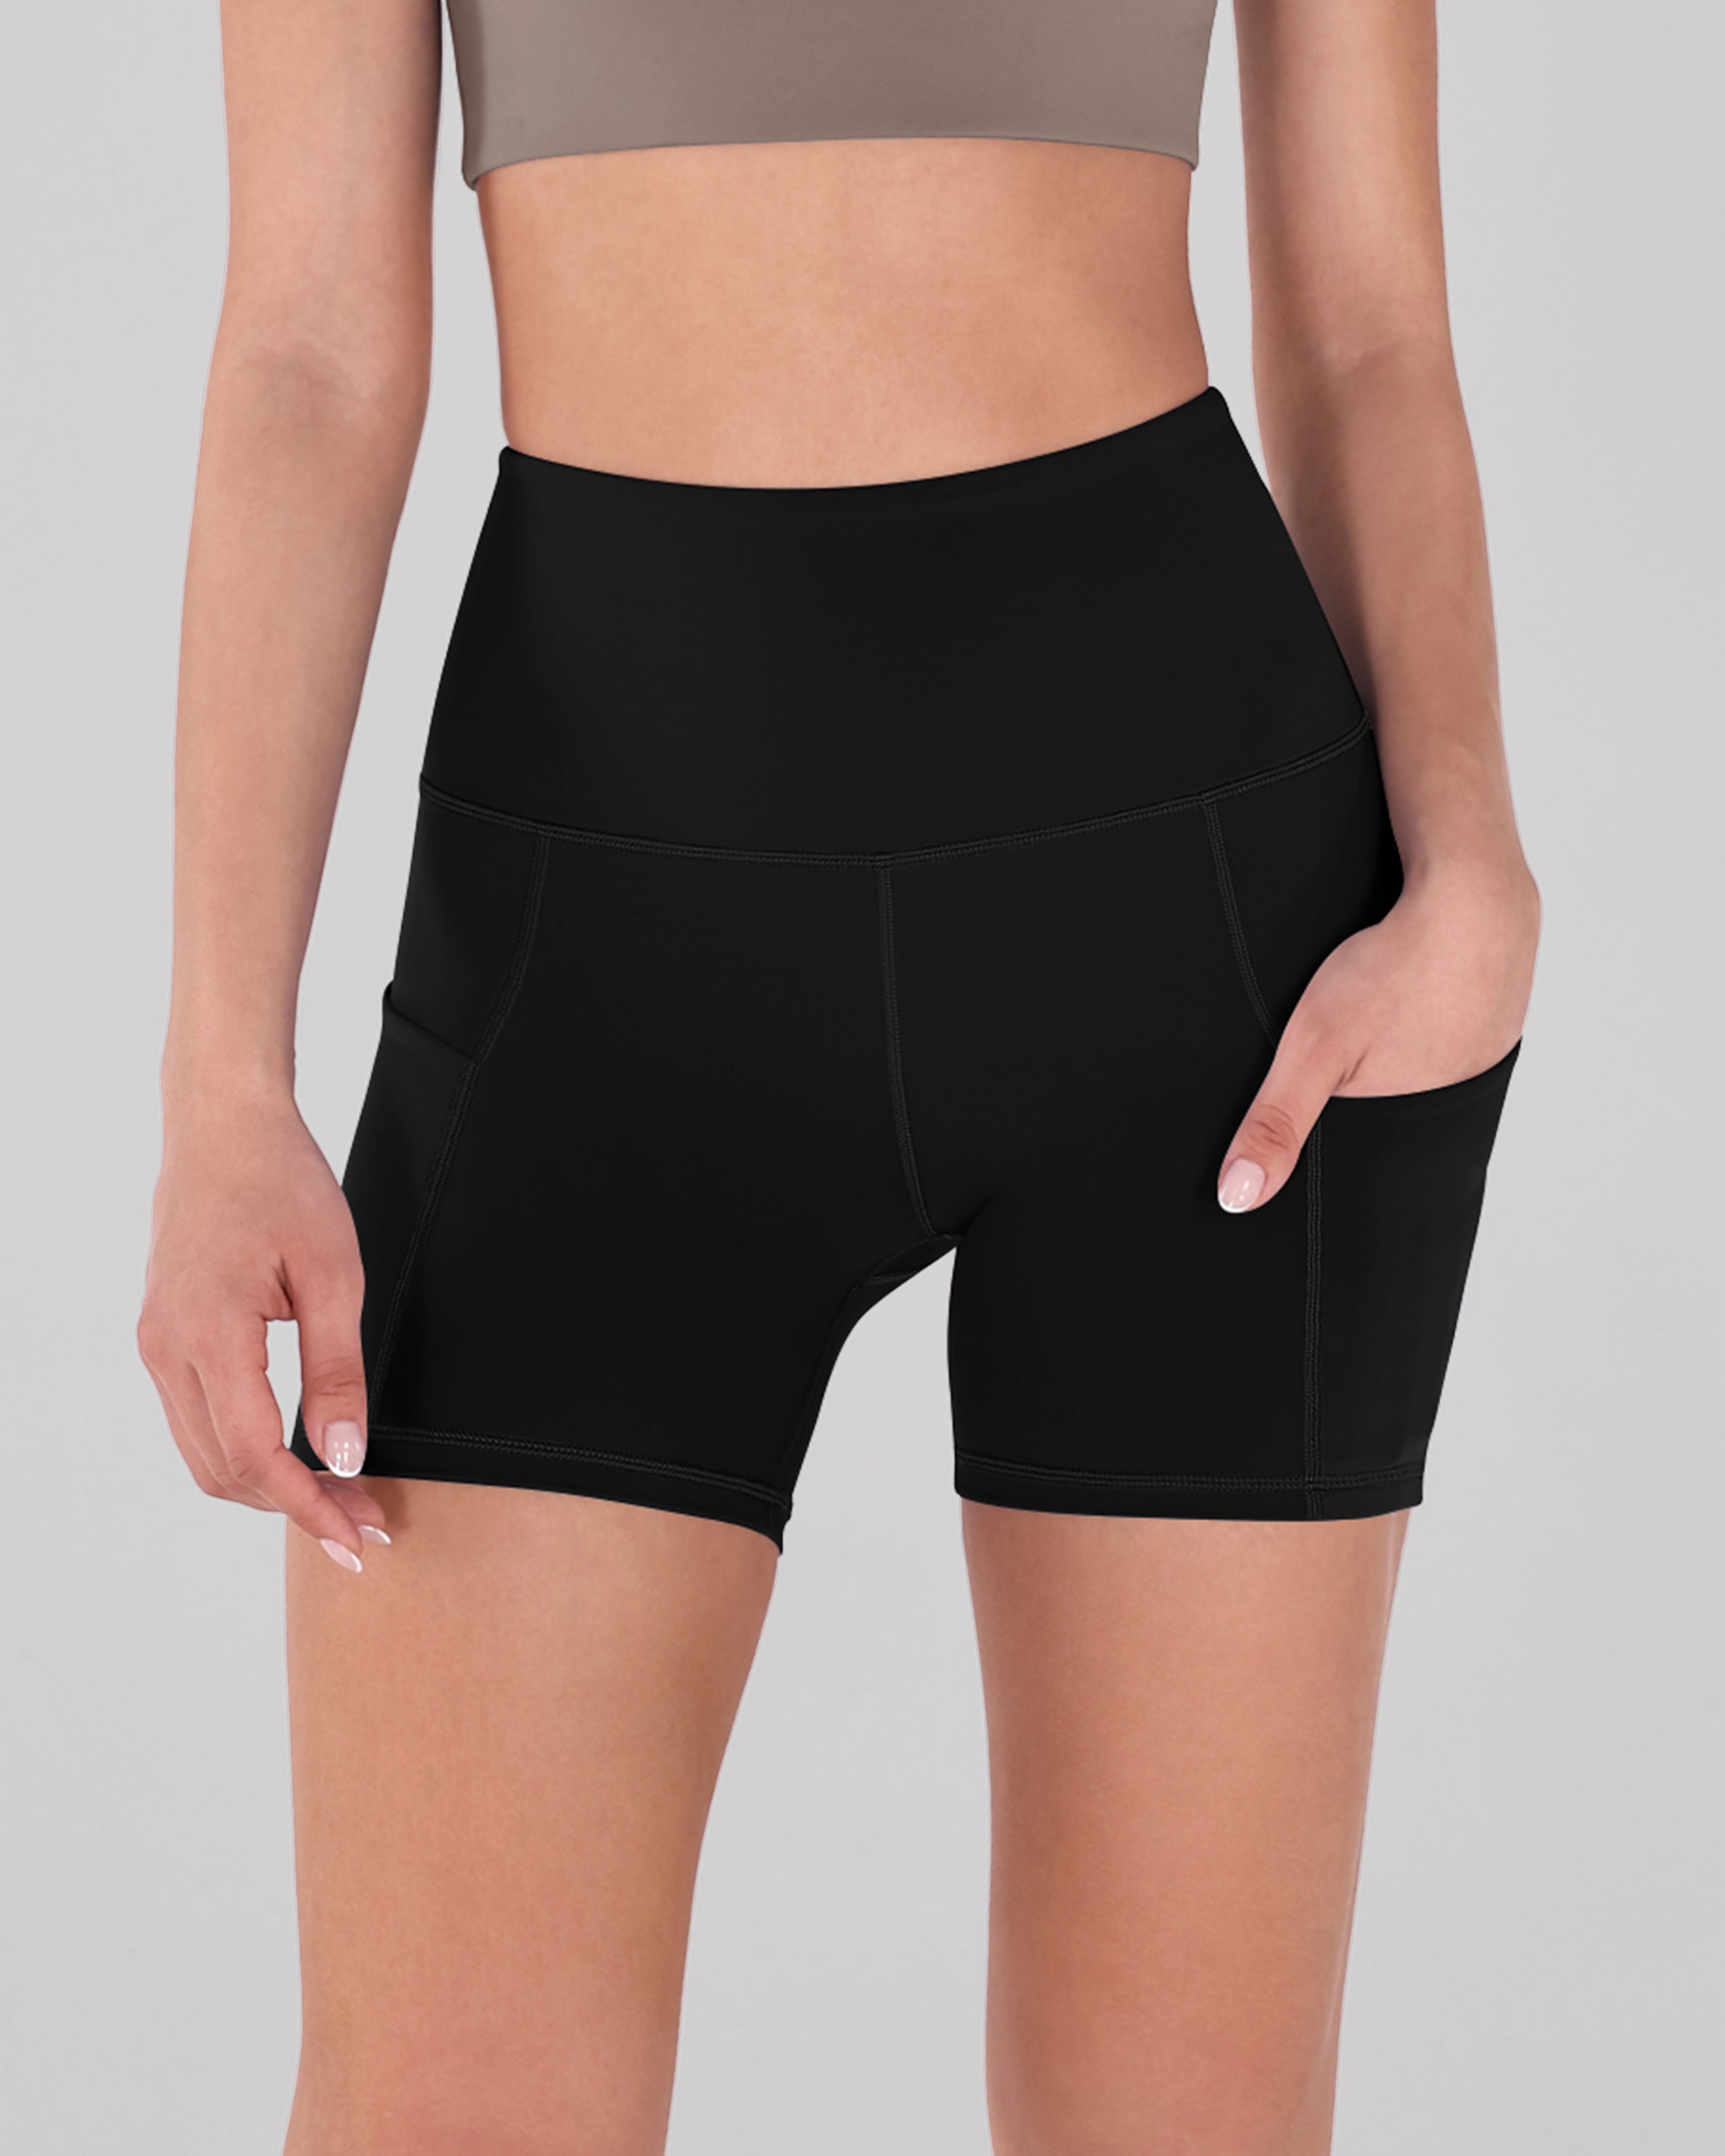 5" High Waist Tummy Control Shorts with Pockets Black - ododos